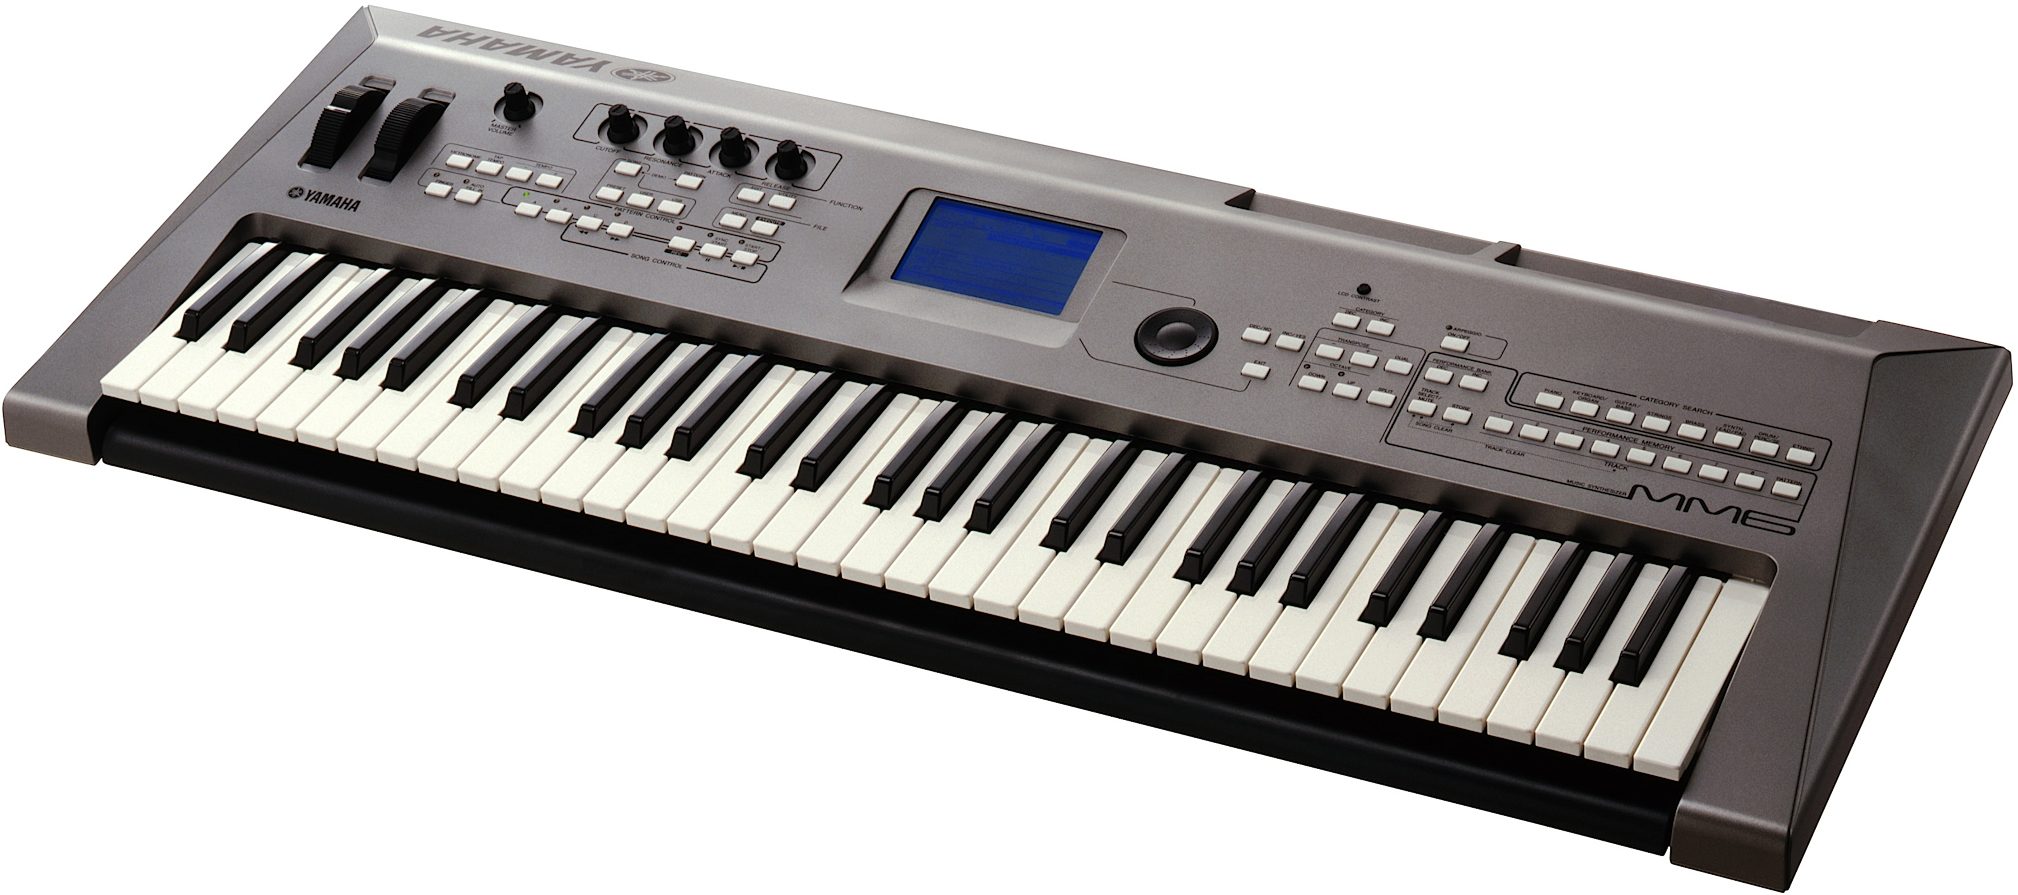 Yamaha MM6 61-Key Synthesizer